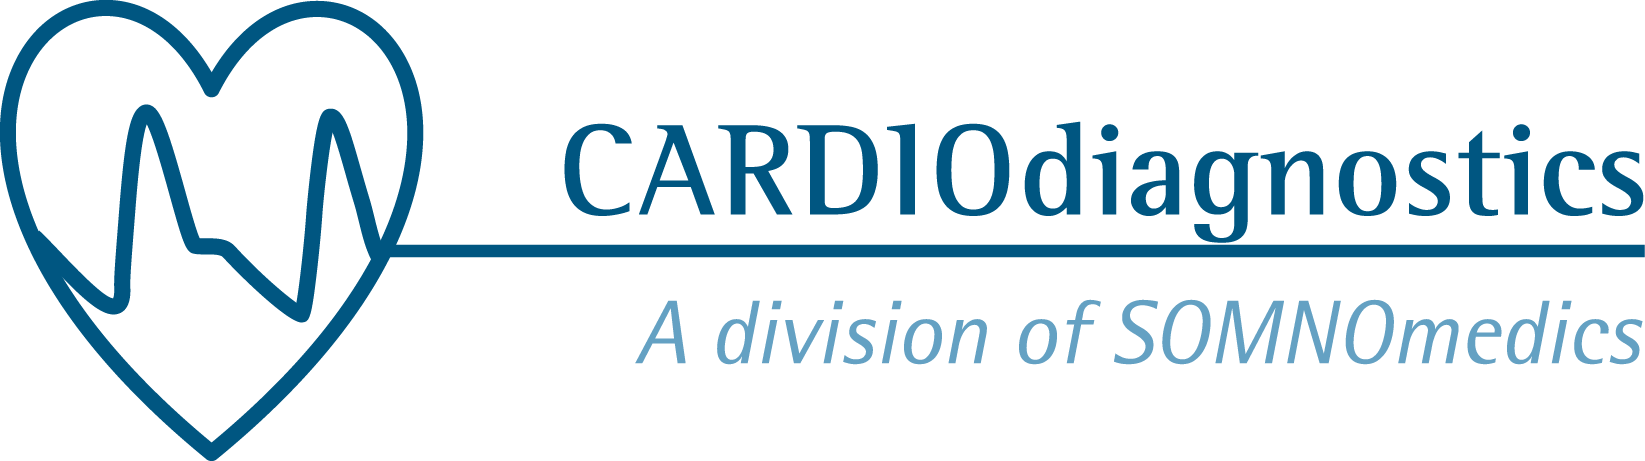 Logo of Cardiogiagnostic